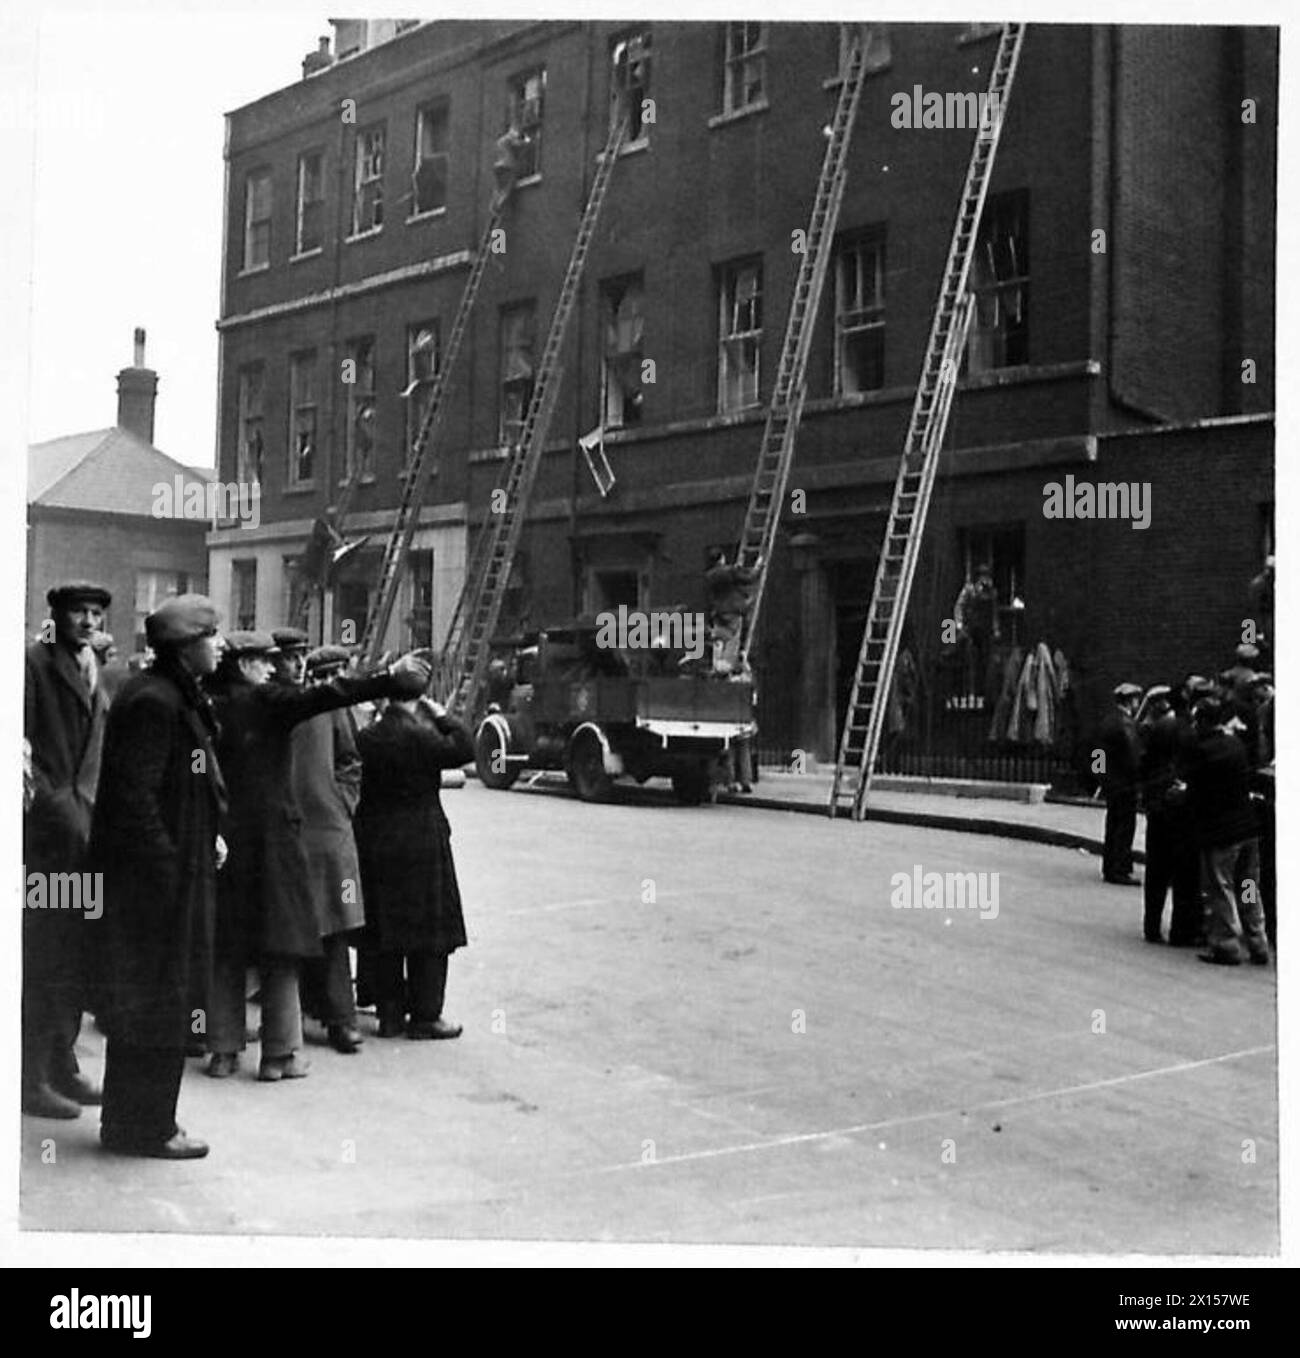 NO.10 DOWNING STREET WURDE WÄHREND DES RAID BESCHÄDIGT - eine geschäftige Szene in der Downing Street, als Arbeiter Leitern hochklettern, um die beschädigten Fenster in der No.10 British Army zu reparieren Stockfoto